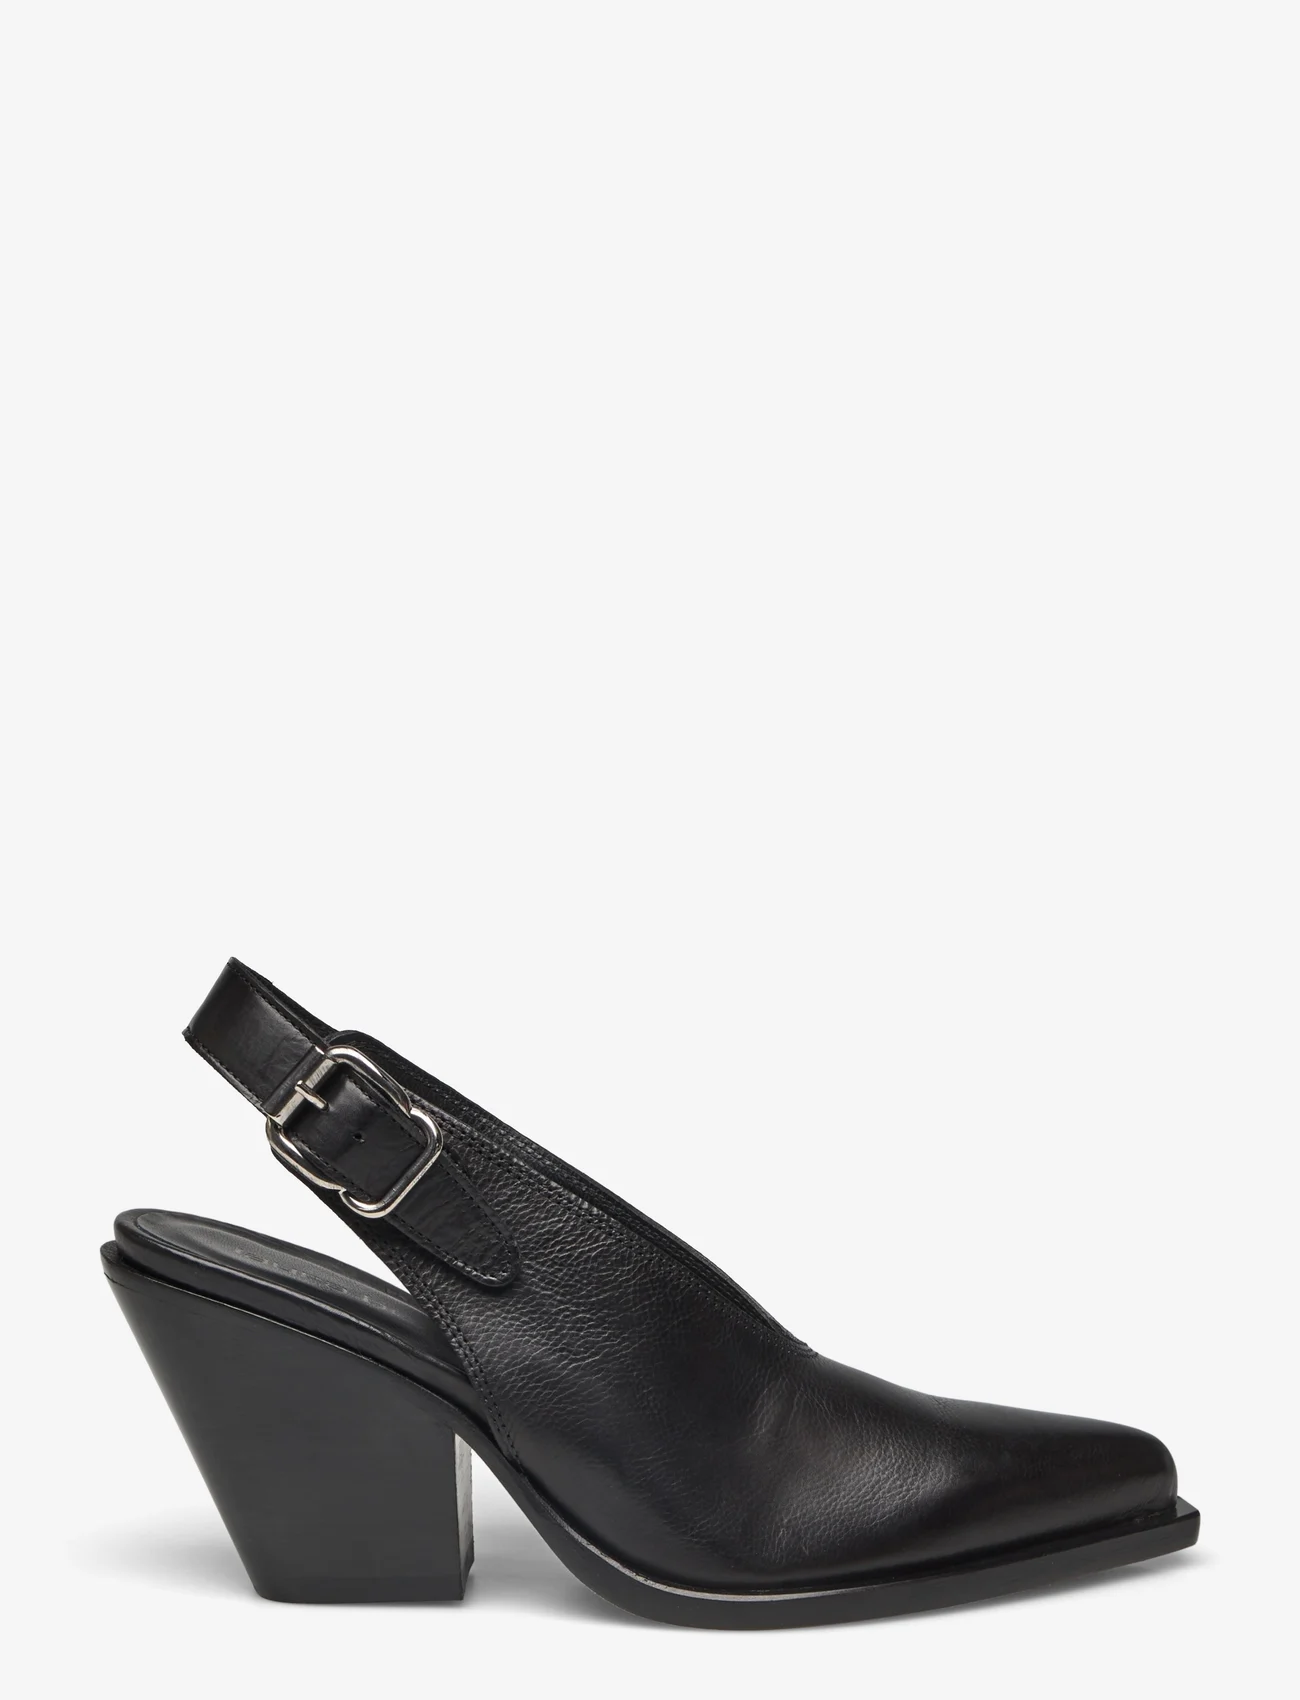 Laura Bellariva - shoes - slingbacks med hæl - black - 1